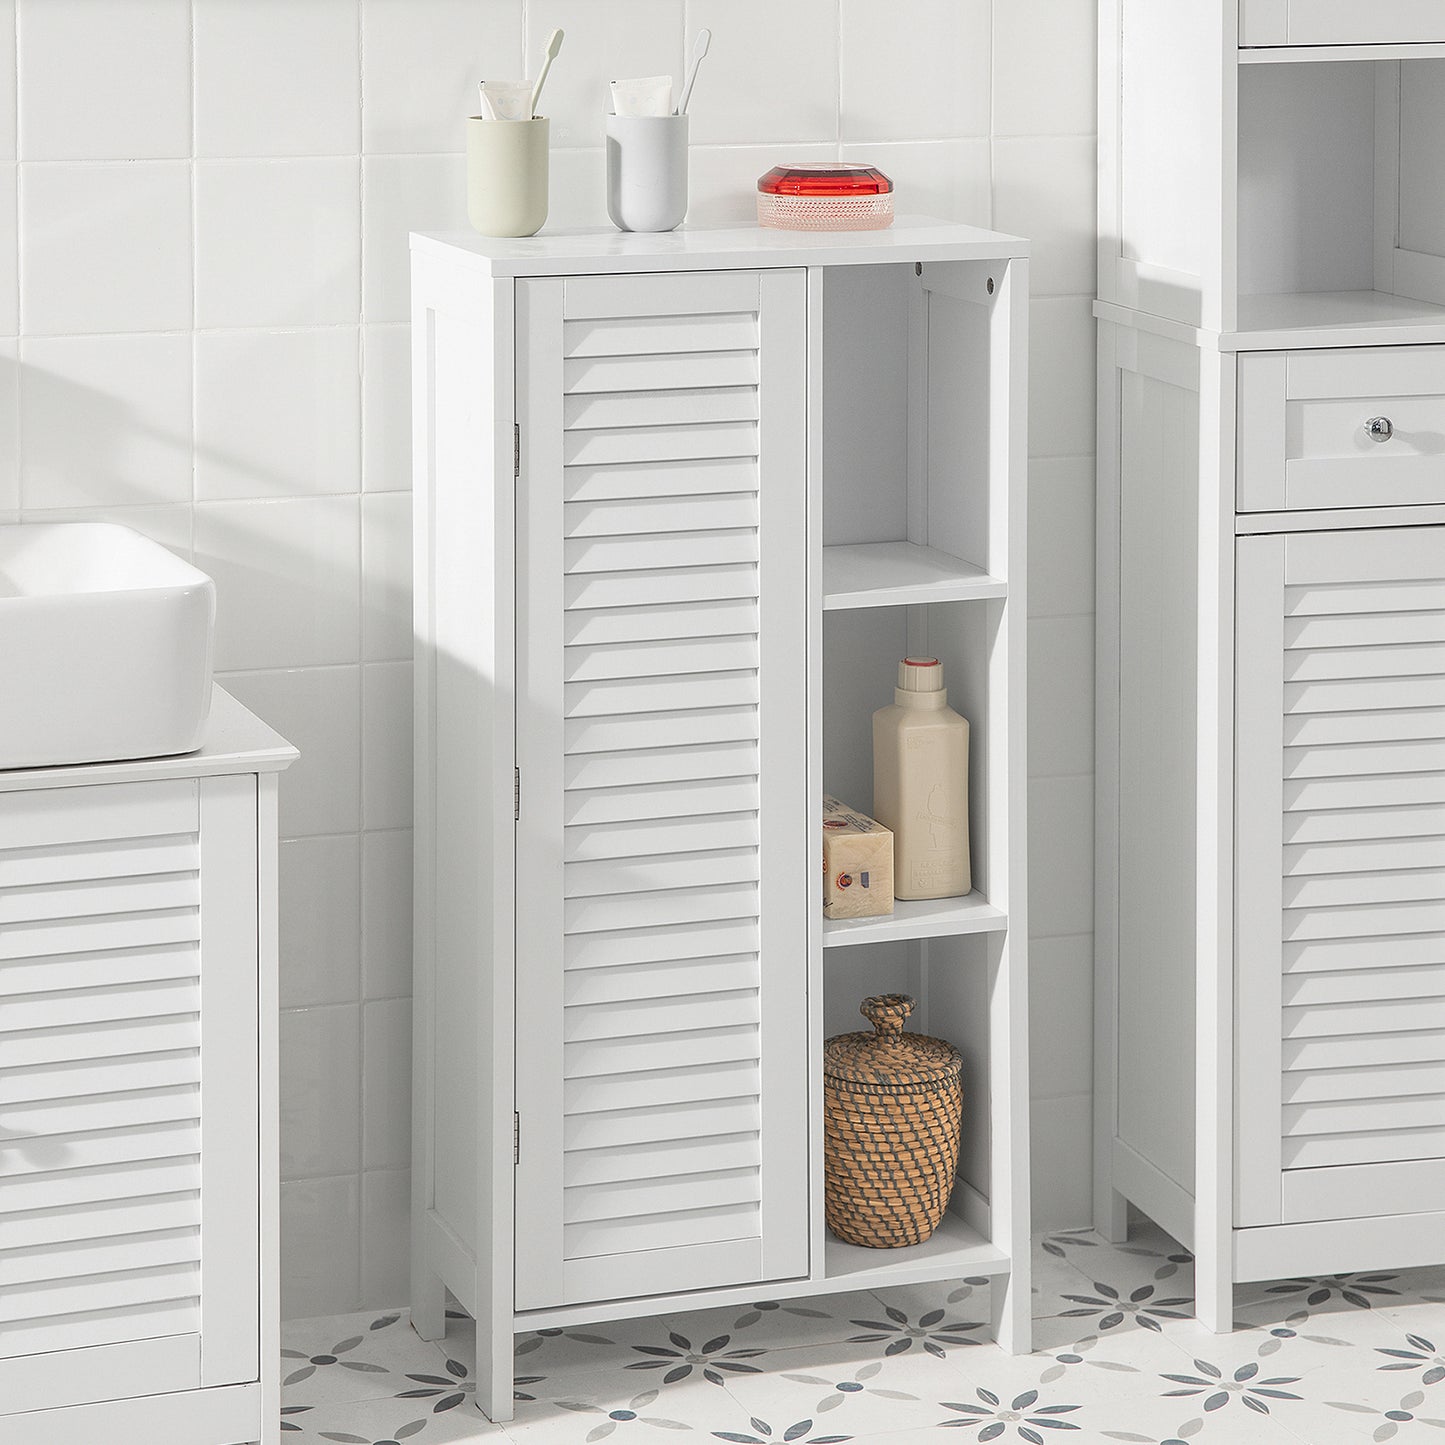 SoBuy Bathroom Storage Cabinet Cupboard with 3 Shelves and 1 Shutter Door